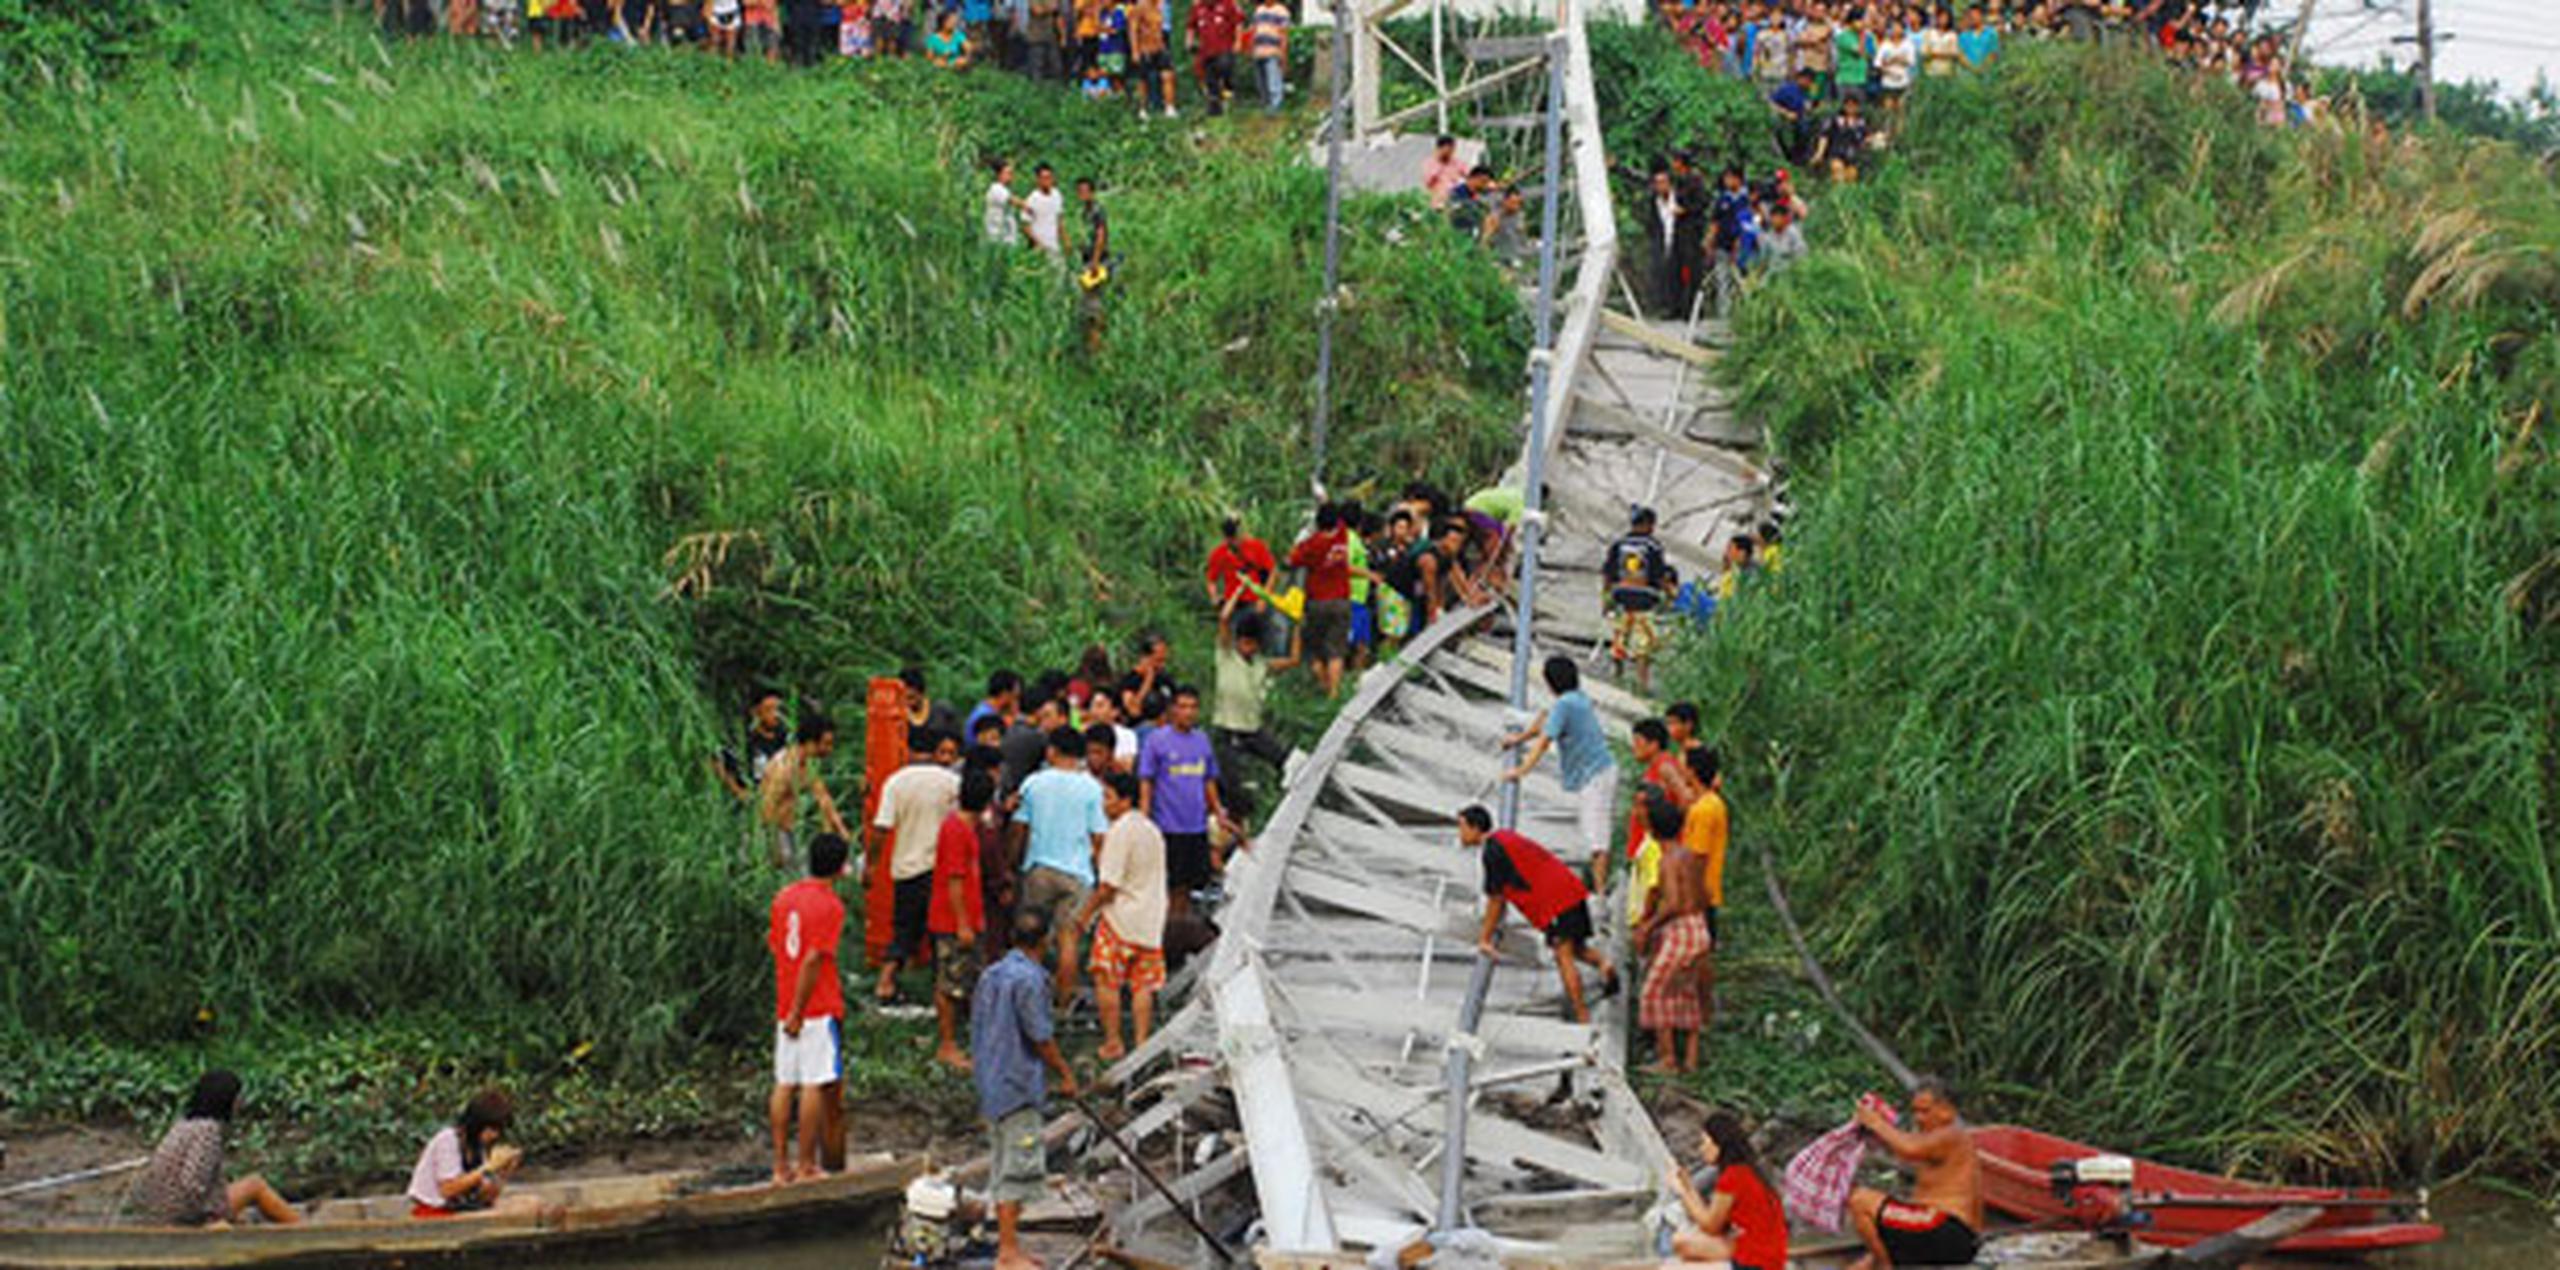 El puente, de 4 metros de ancho y 20 de largo, fue reparado el año pasado tras las graves inundaciones que afectaron en 2011 a Ayutthaya y a otras provincias de Tailandia. (EFE)